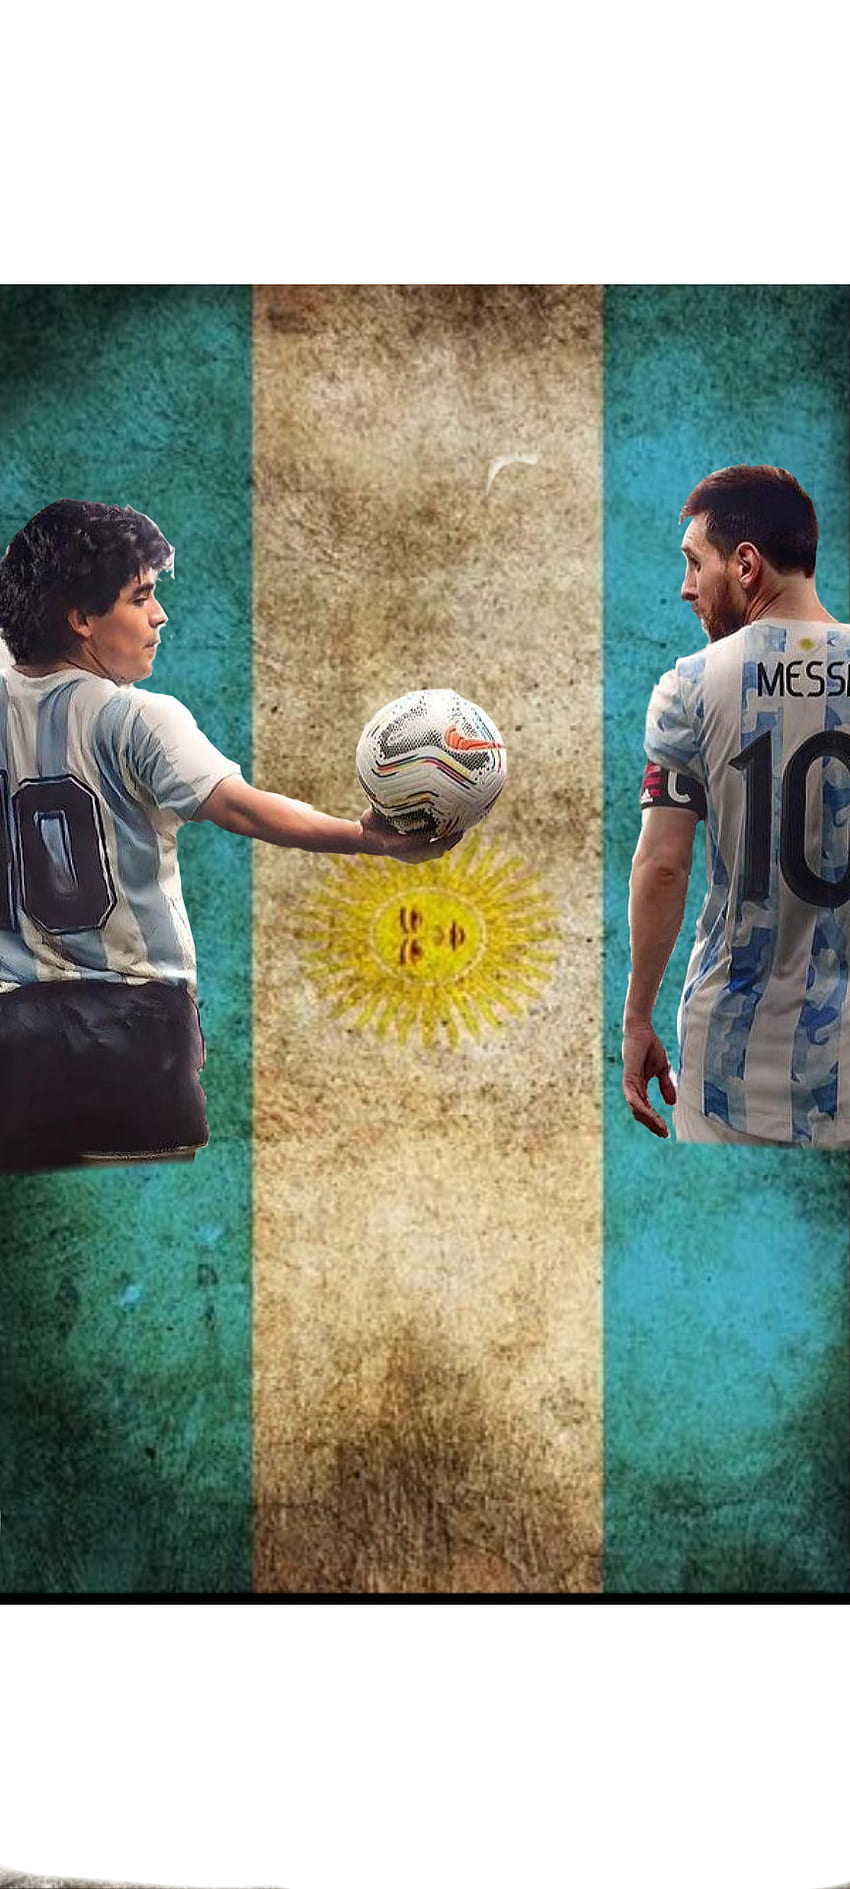 Hãy tận hưởng tựa wallpaper Maradona đầy phong độ và năng lượng. Hình ảnh chắc chắn sẽ làm bạn nhớ về những khoảnh khắc đáng nhớ của ông hoàng đá bóng từng làm nên lịch sử.